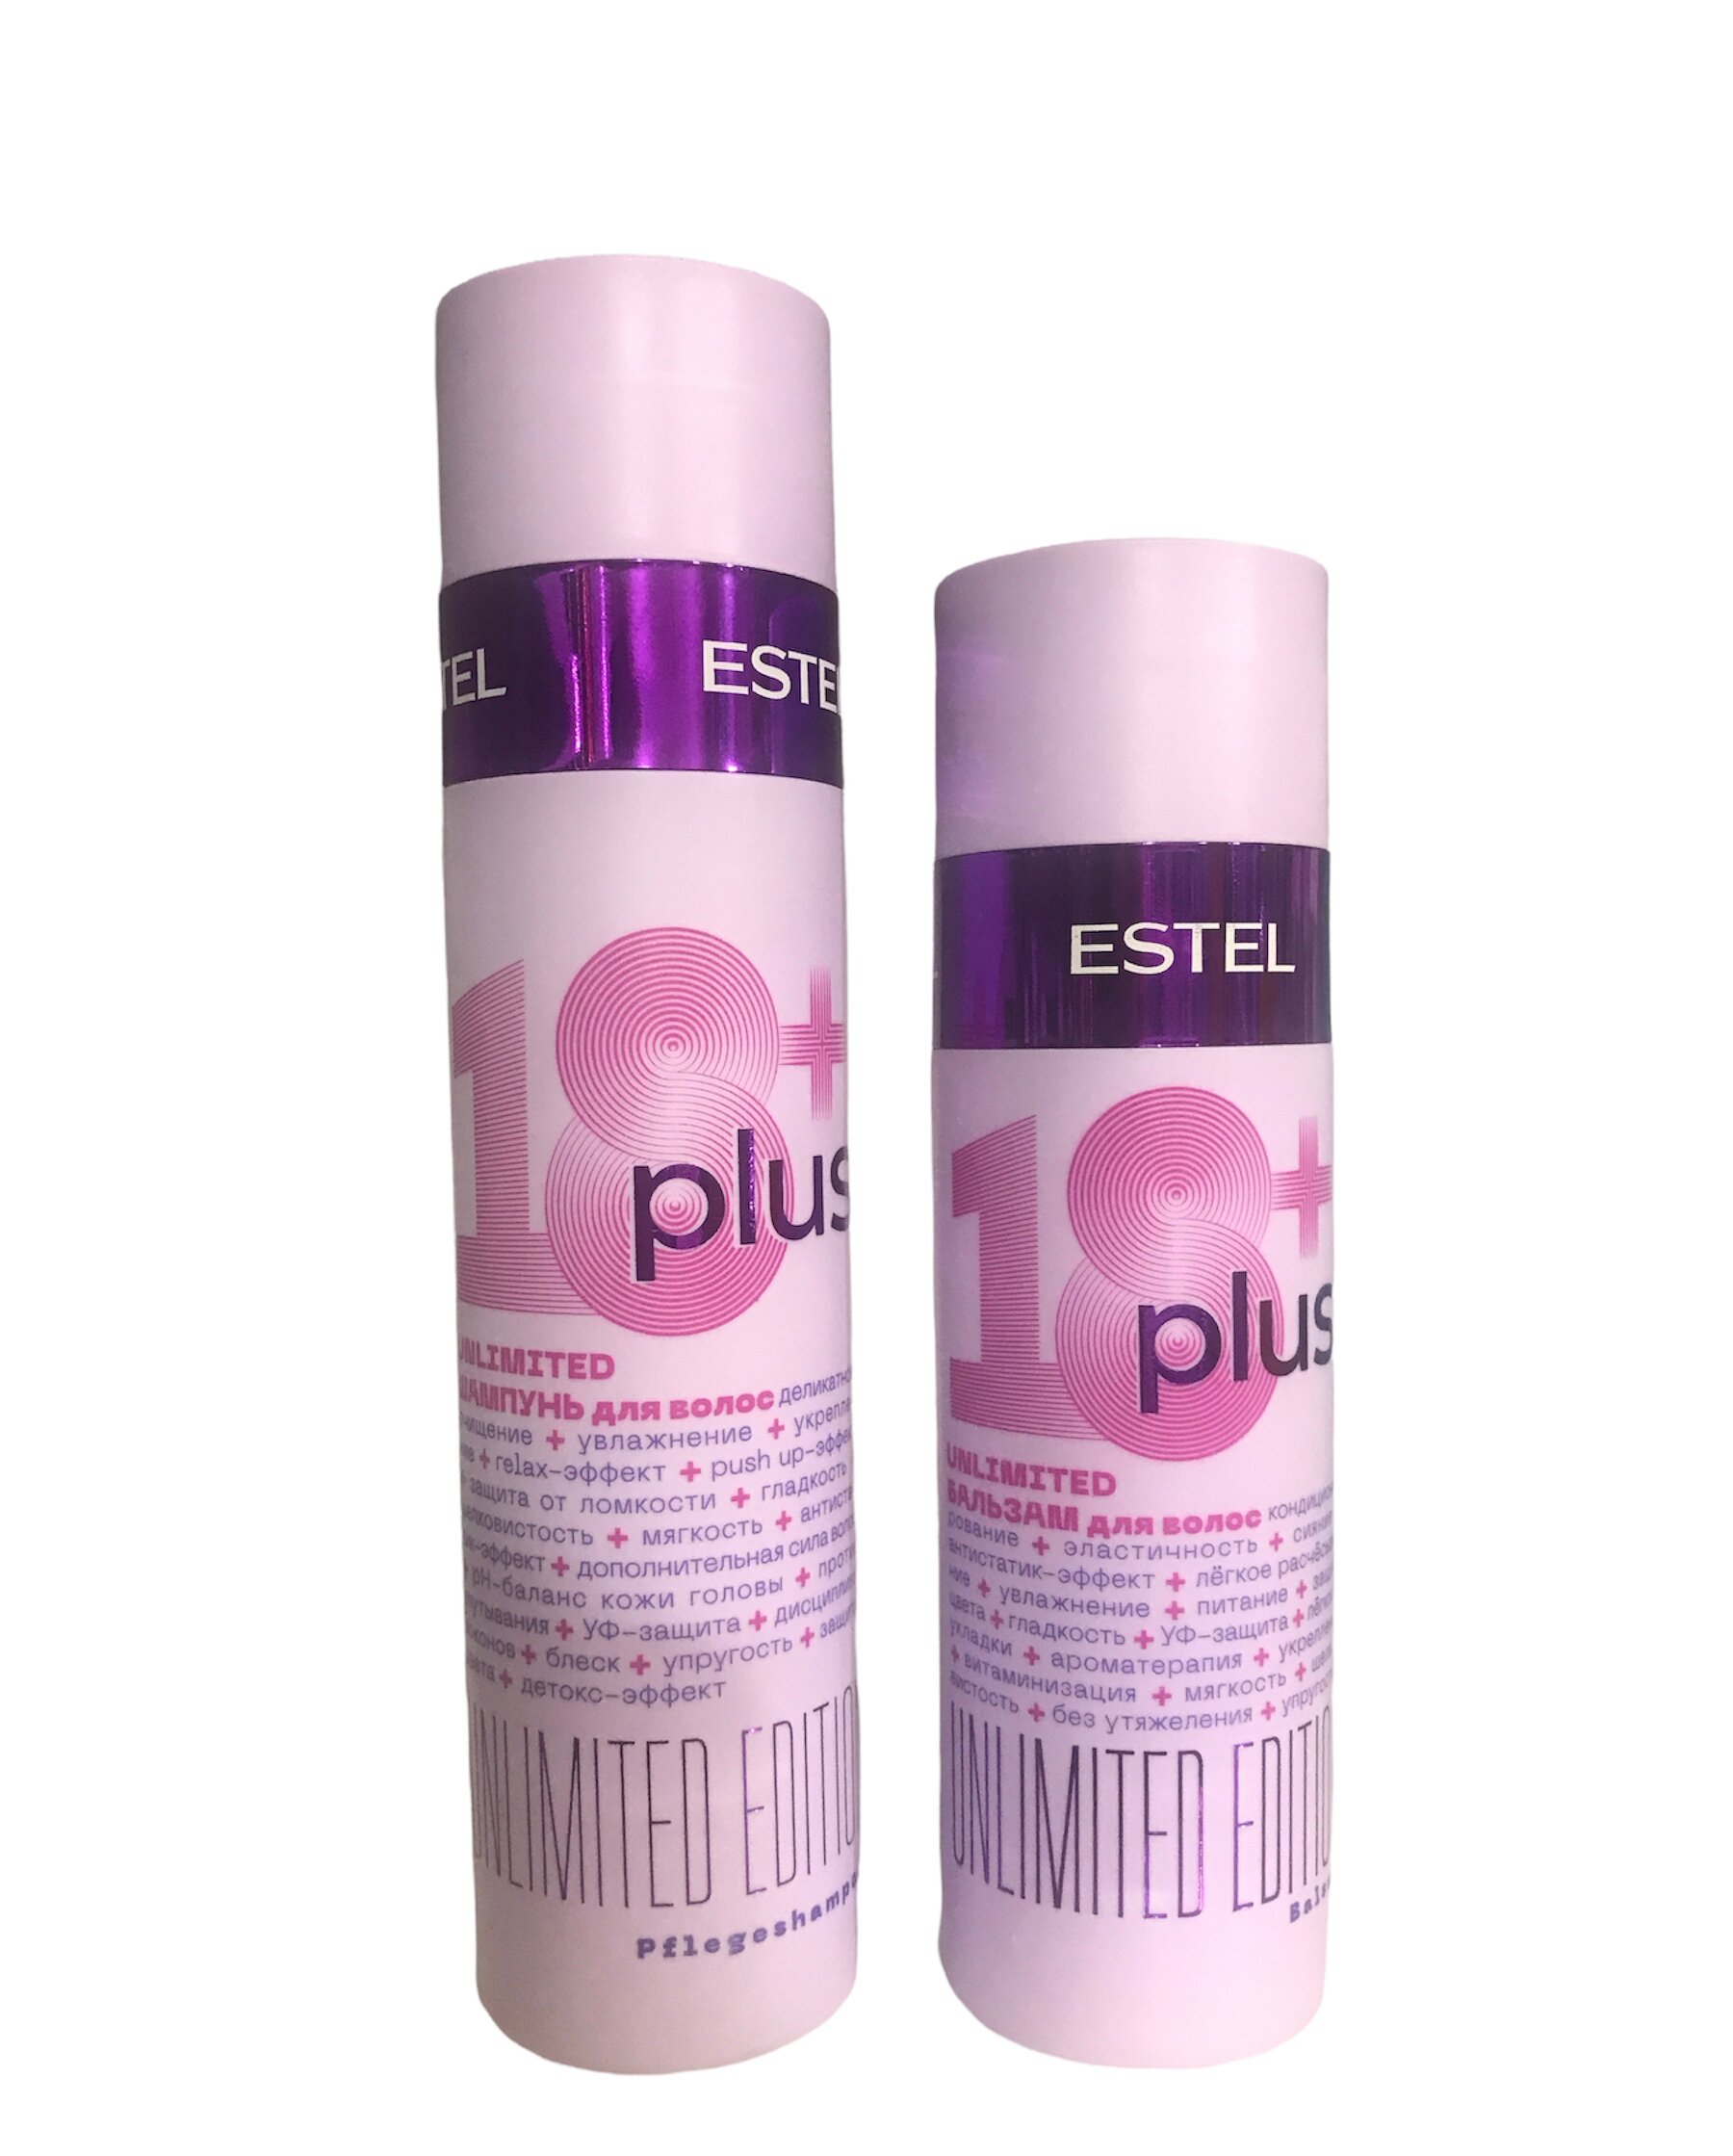 Набор ESTEL 18+ Plus набор для ухода за волосами шампунь 250 мл + бальзам 200 мл indigo style бальзам маска цитрусовая для ухода за окрашиваемыми осветленными волосами 200